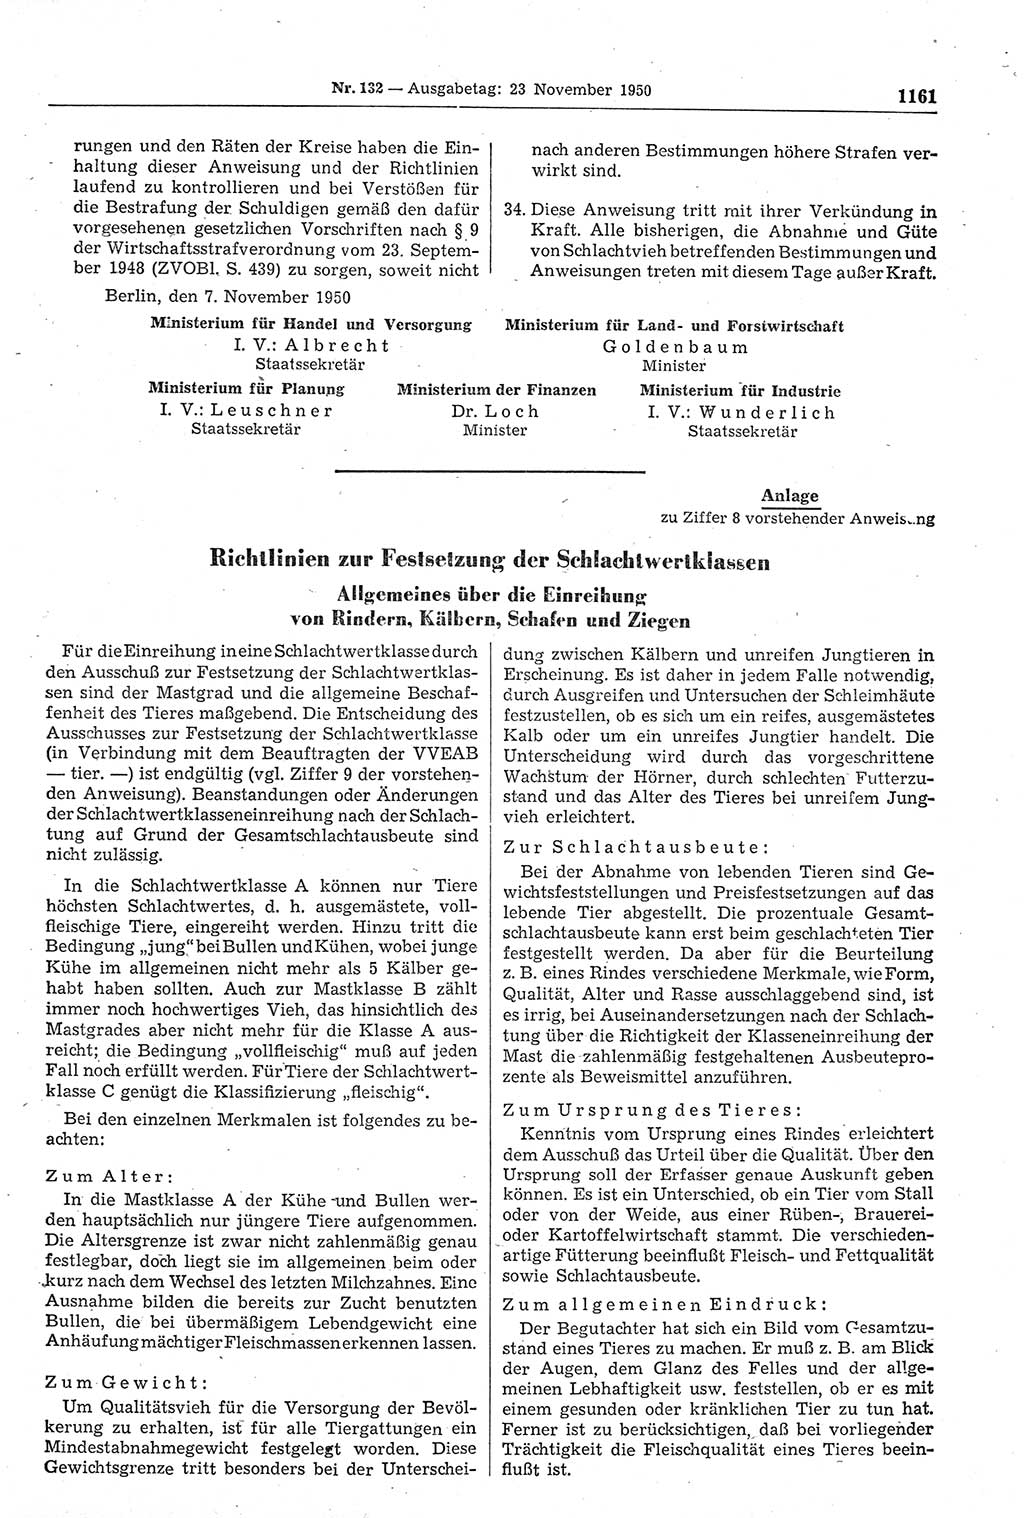 Gesetzblatt (GBl.) der Deutschen Demokratischen Republik (DDR) 1950, Seite 1161 (GBl. DDR 1950, S. 1161)